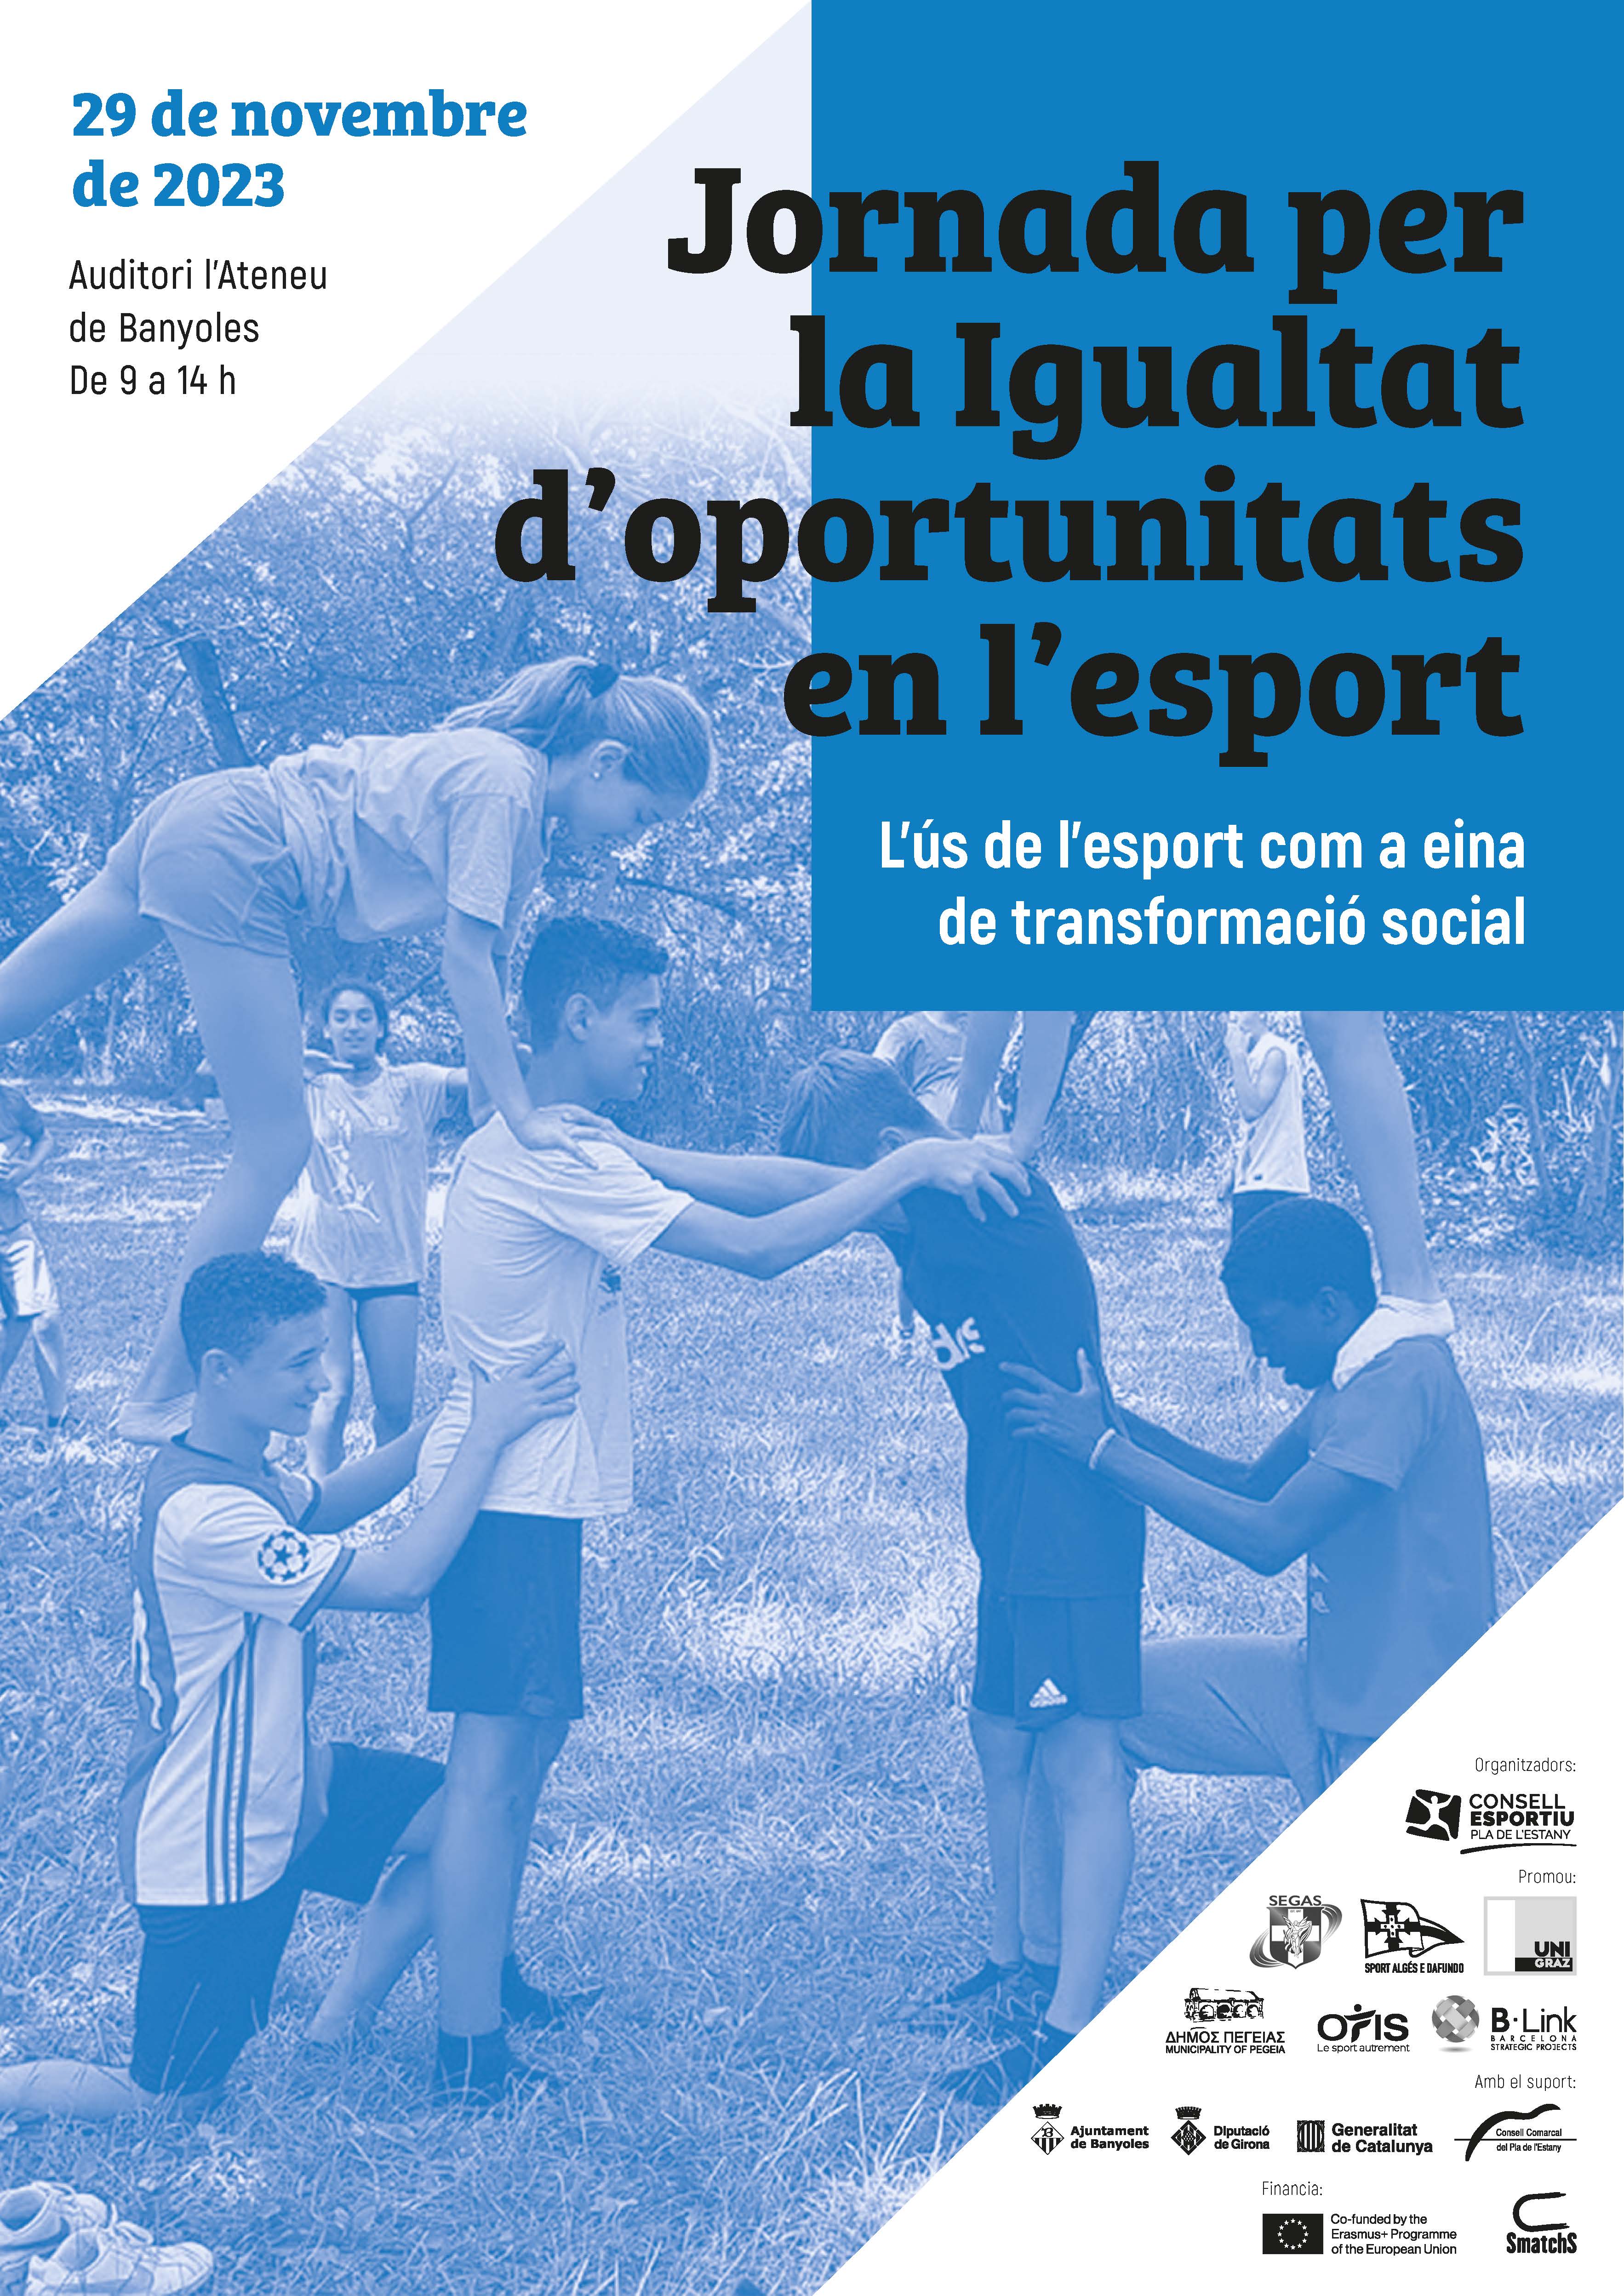 La ‘Jornada per la Igualtat d’oportunitats en l’esport’ posarà punt i final al projecte SMATCHS del Consell Esportiu del Pla de l’Estany